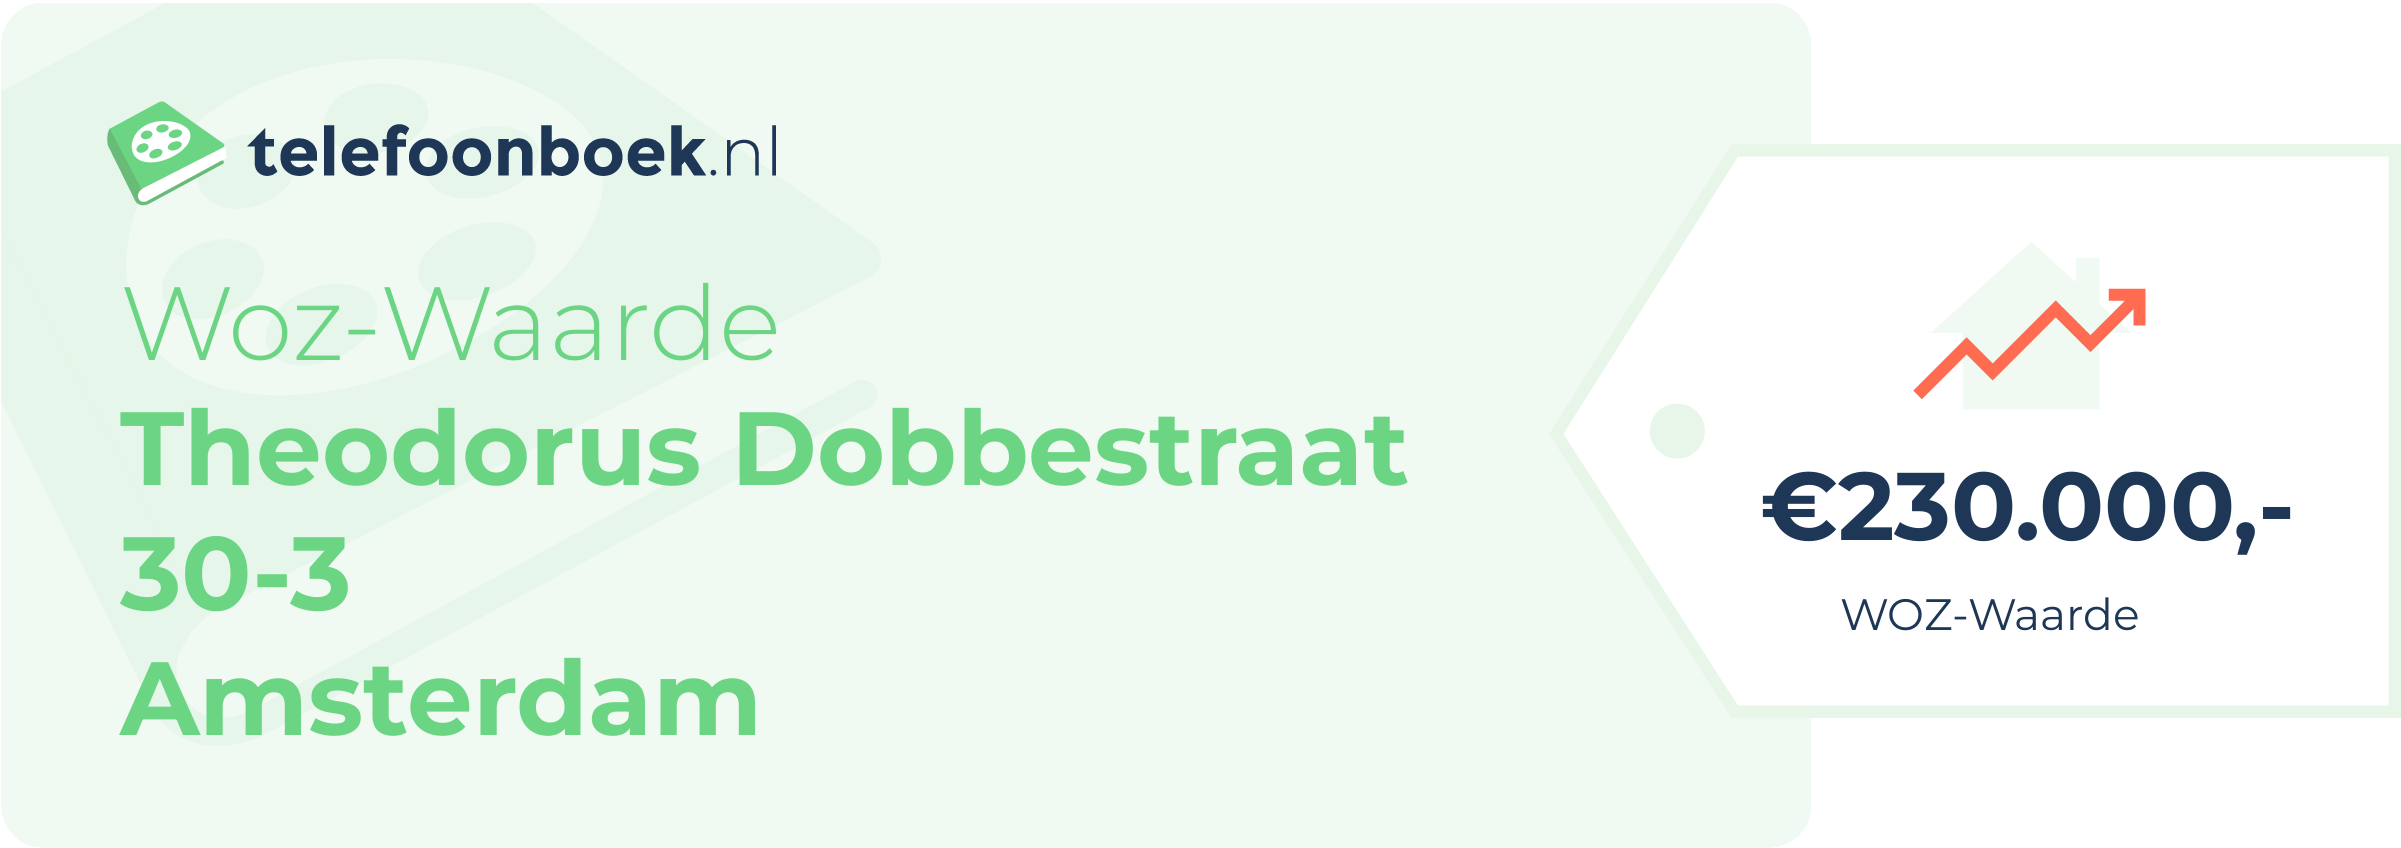 WOZ-waarde Theodorus Dobbestraat 30-3 Amsterdam